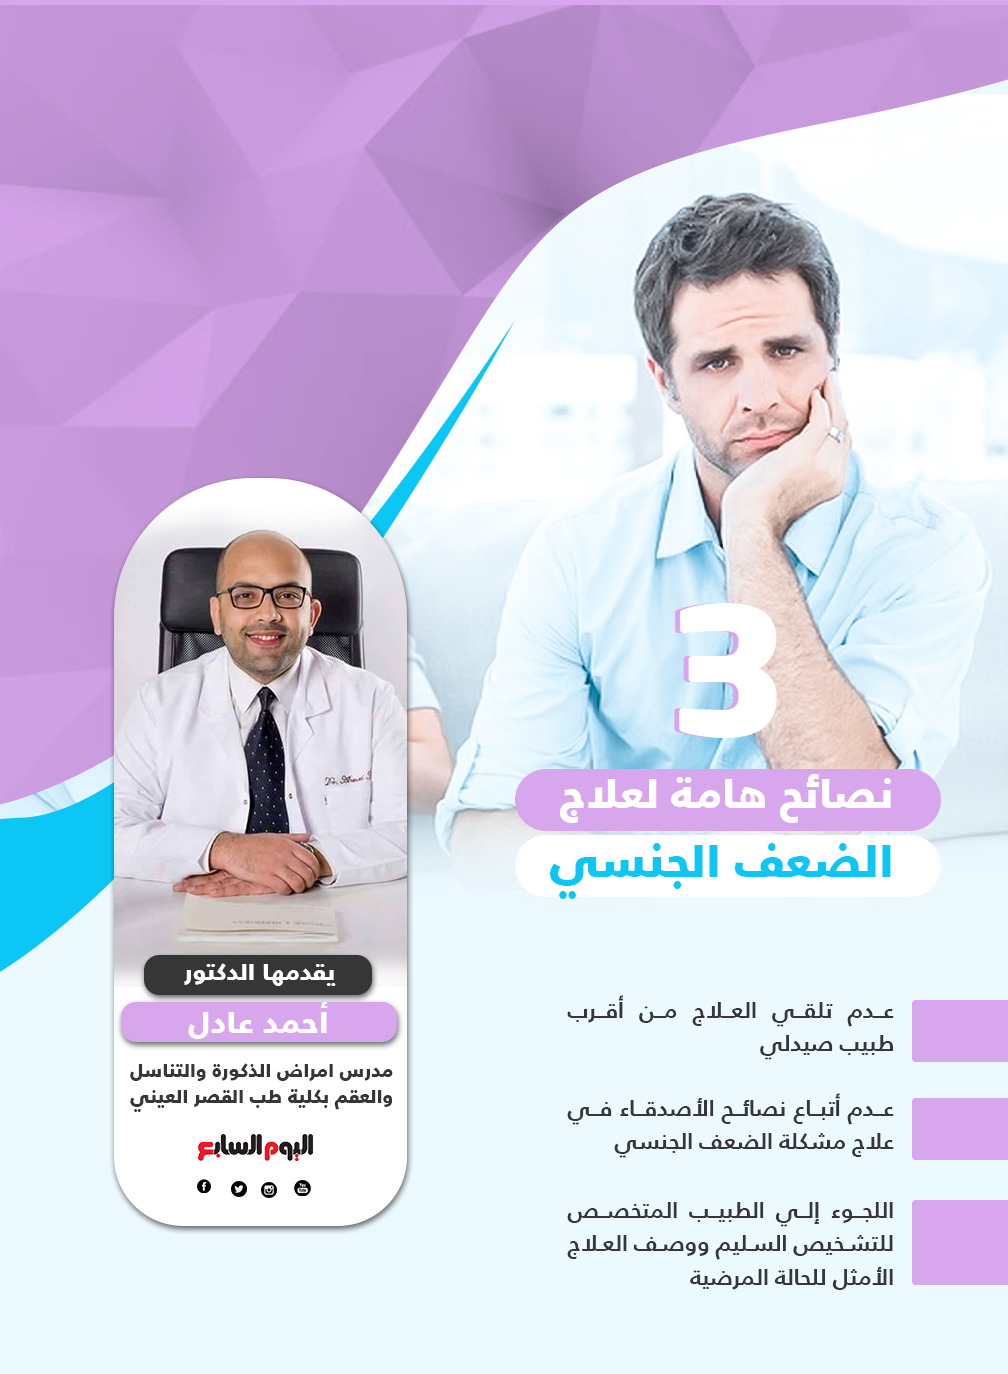 التشخيص من أهم خطوات نجاح علاج الضعف الجنسى الدكتور أحمد عادل يوضح اليوم السابع